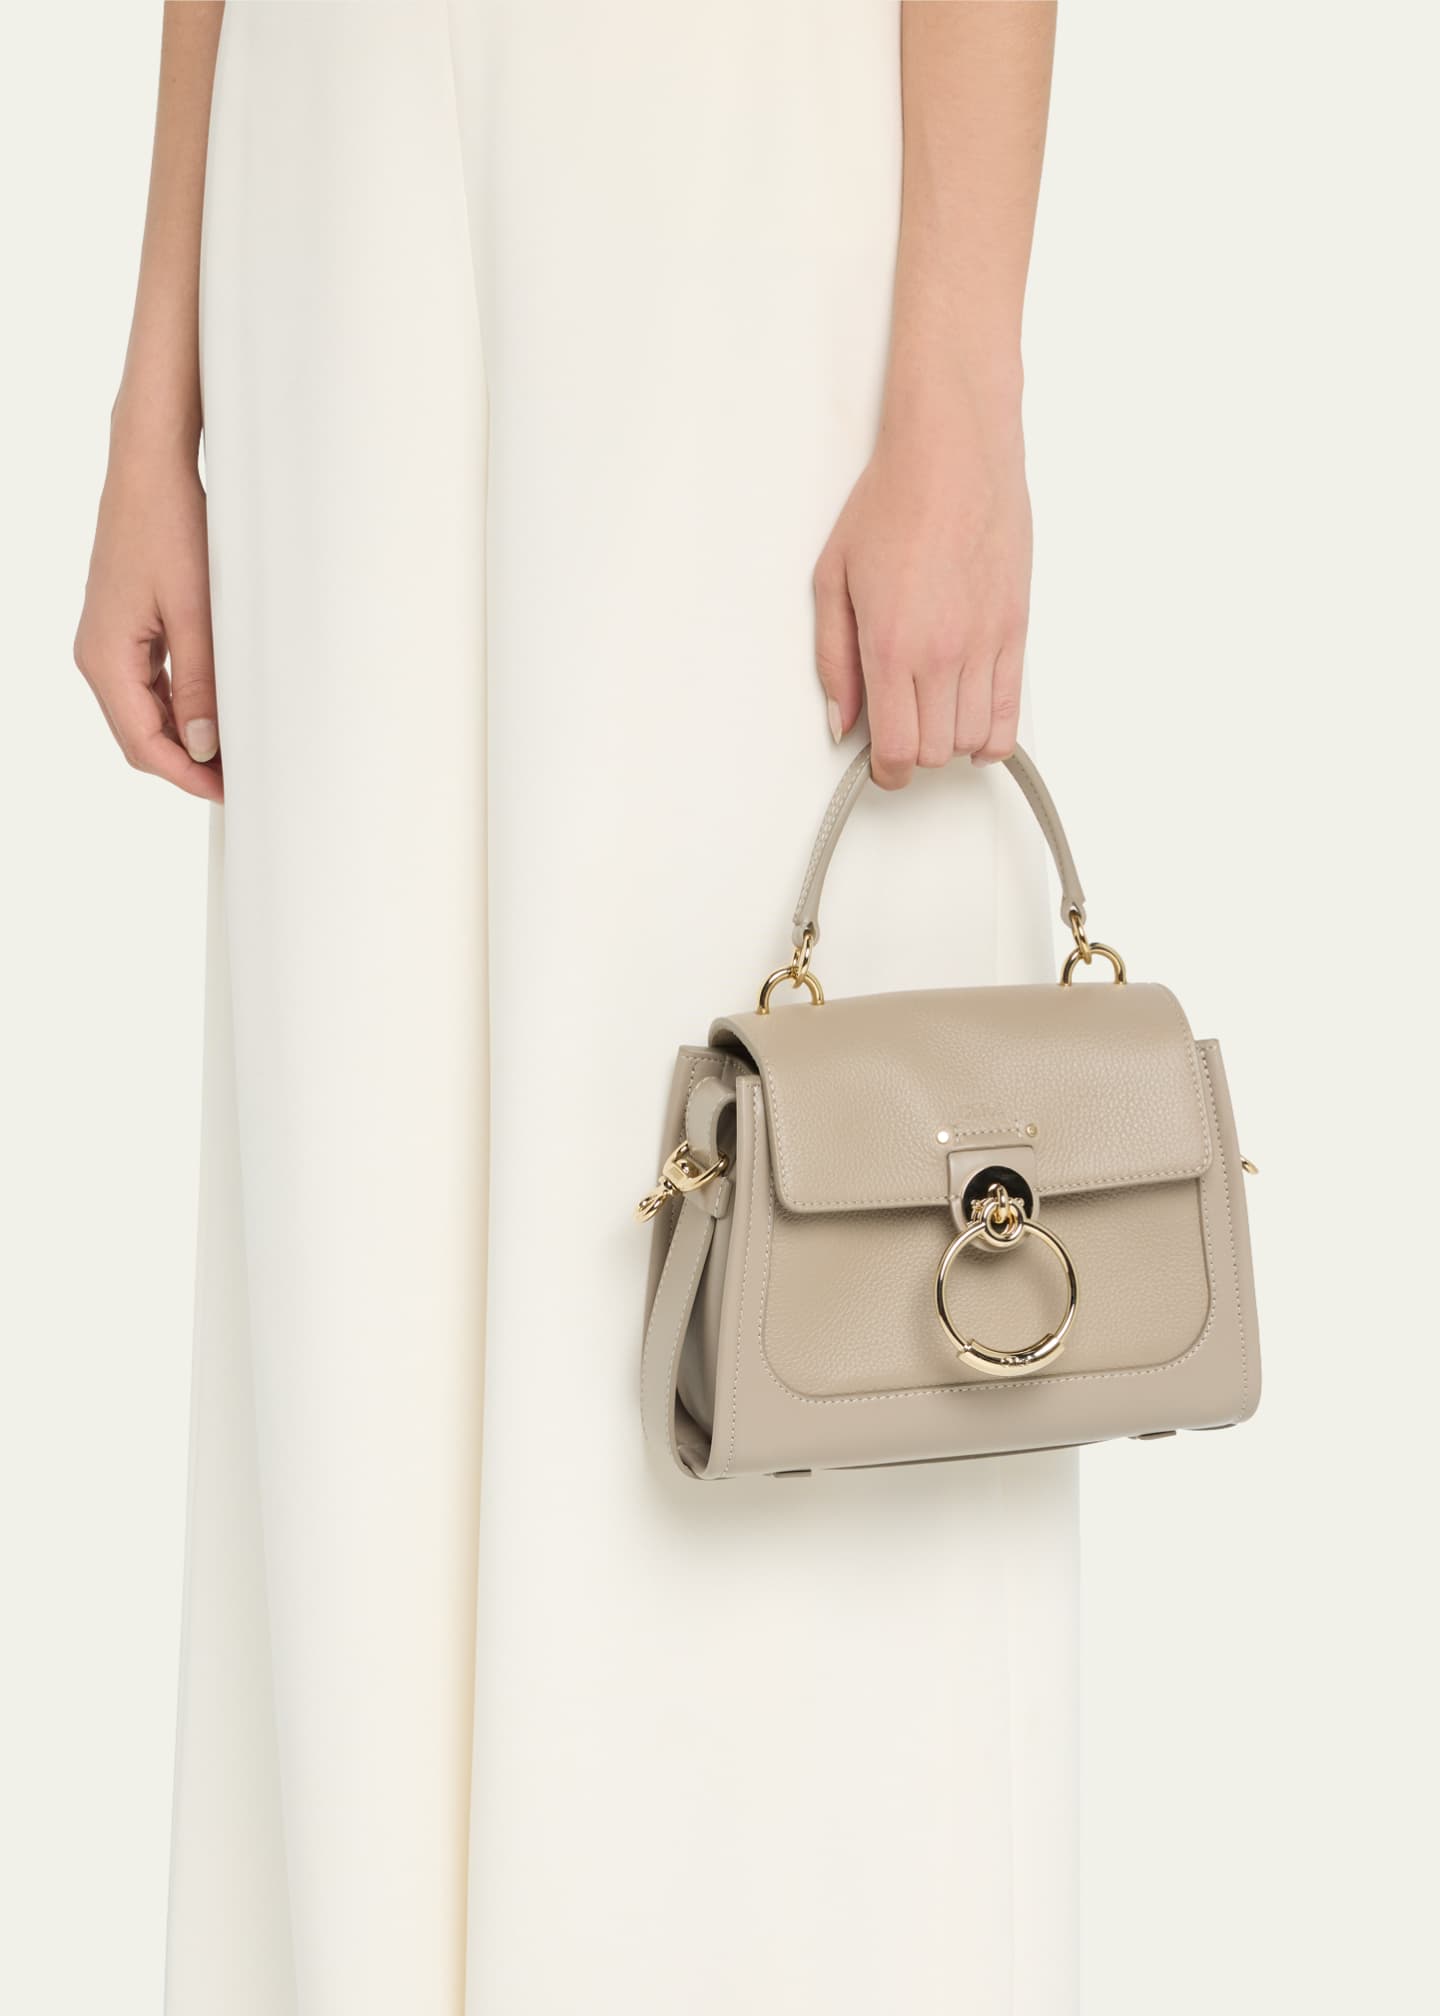 Chloé Tess leather shoulder bag, Brown